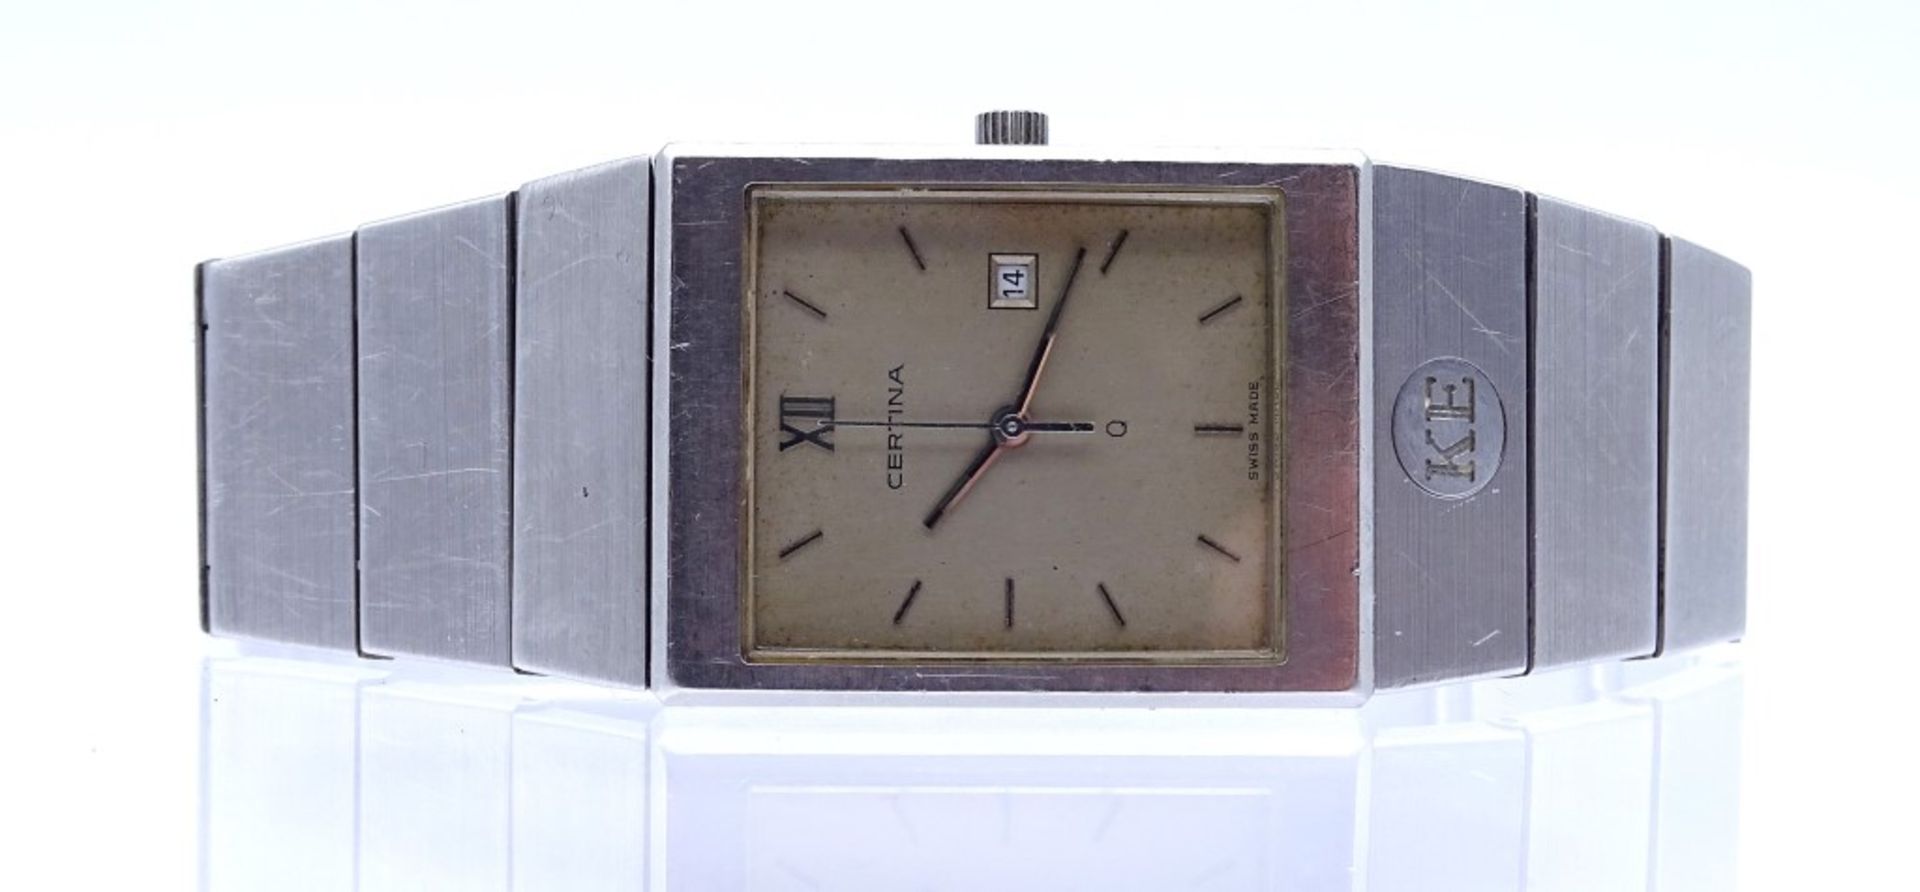 Armbanduhr "Certina",Quartz,Schweiz,Edelstahl,Gehäuse 26x33mm, Saphirglas,Funktion nicht überprüft - Bild 3 aus 5